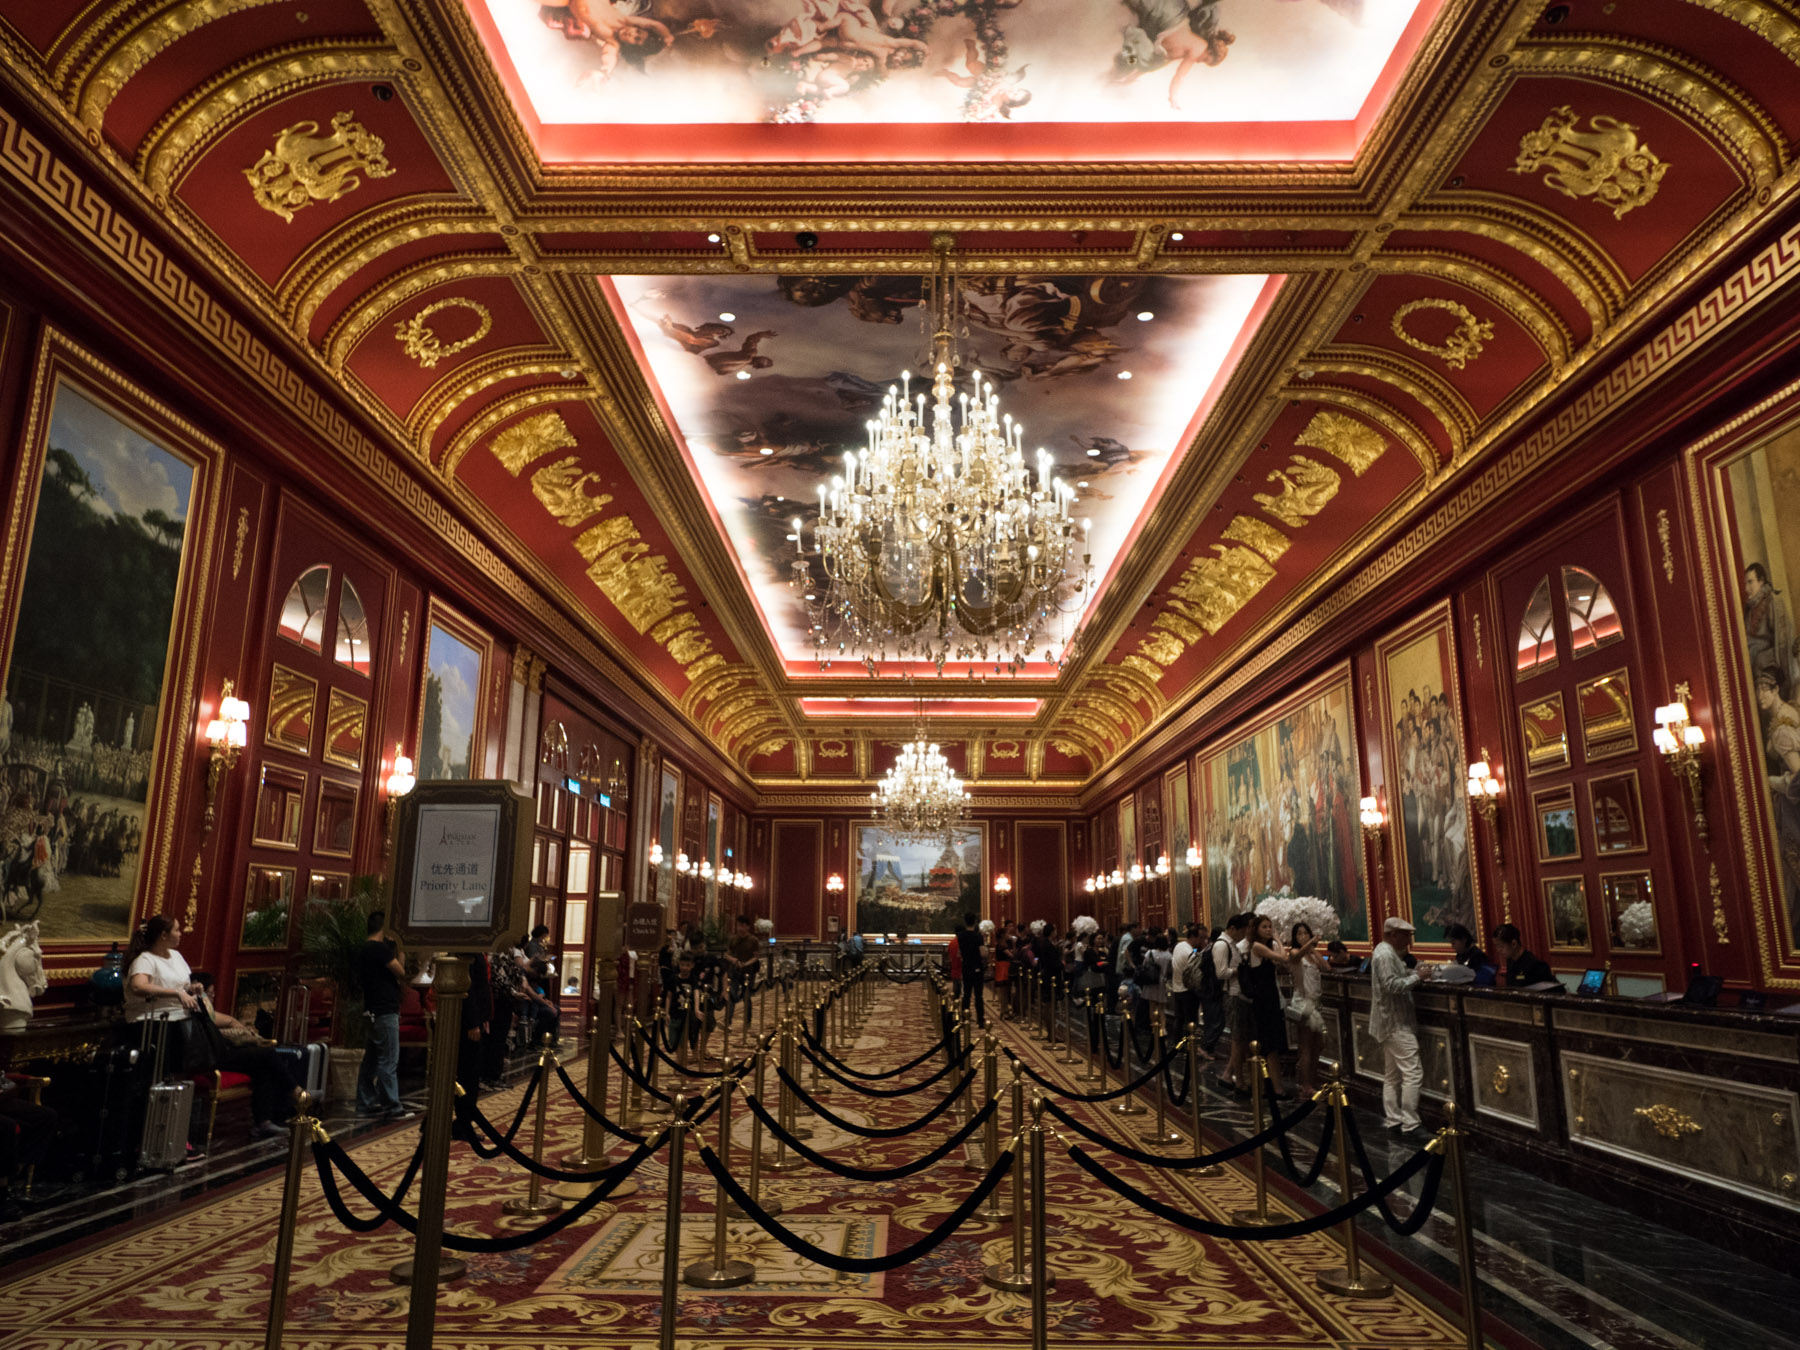 The Parisian Macao โรงแรม ที่เที่ยวแห่งใหม่ในมาเก๊า